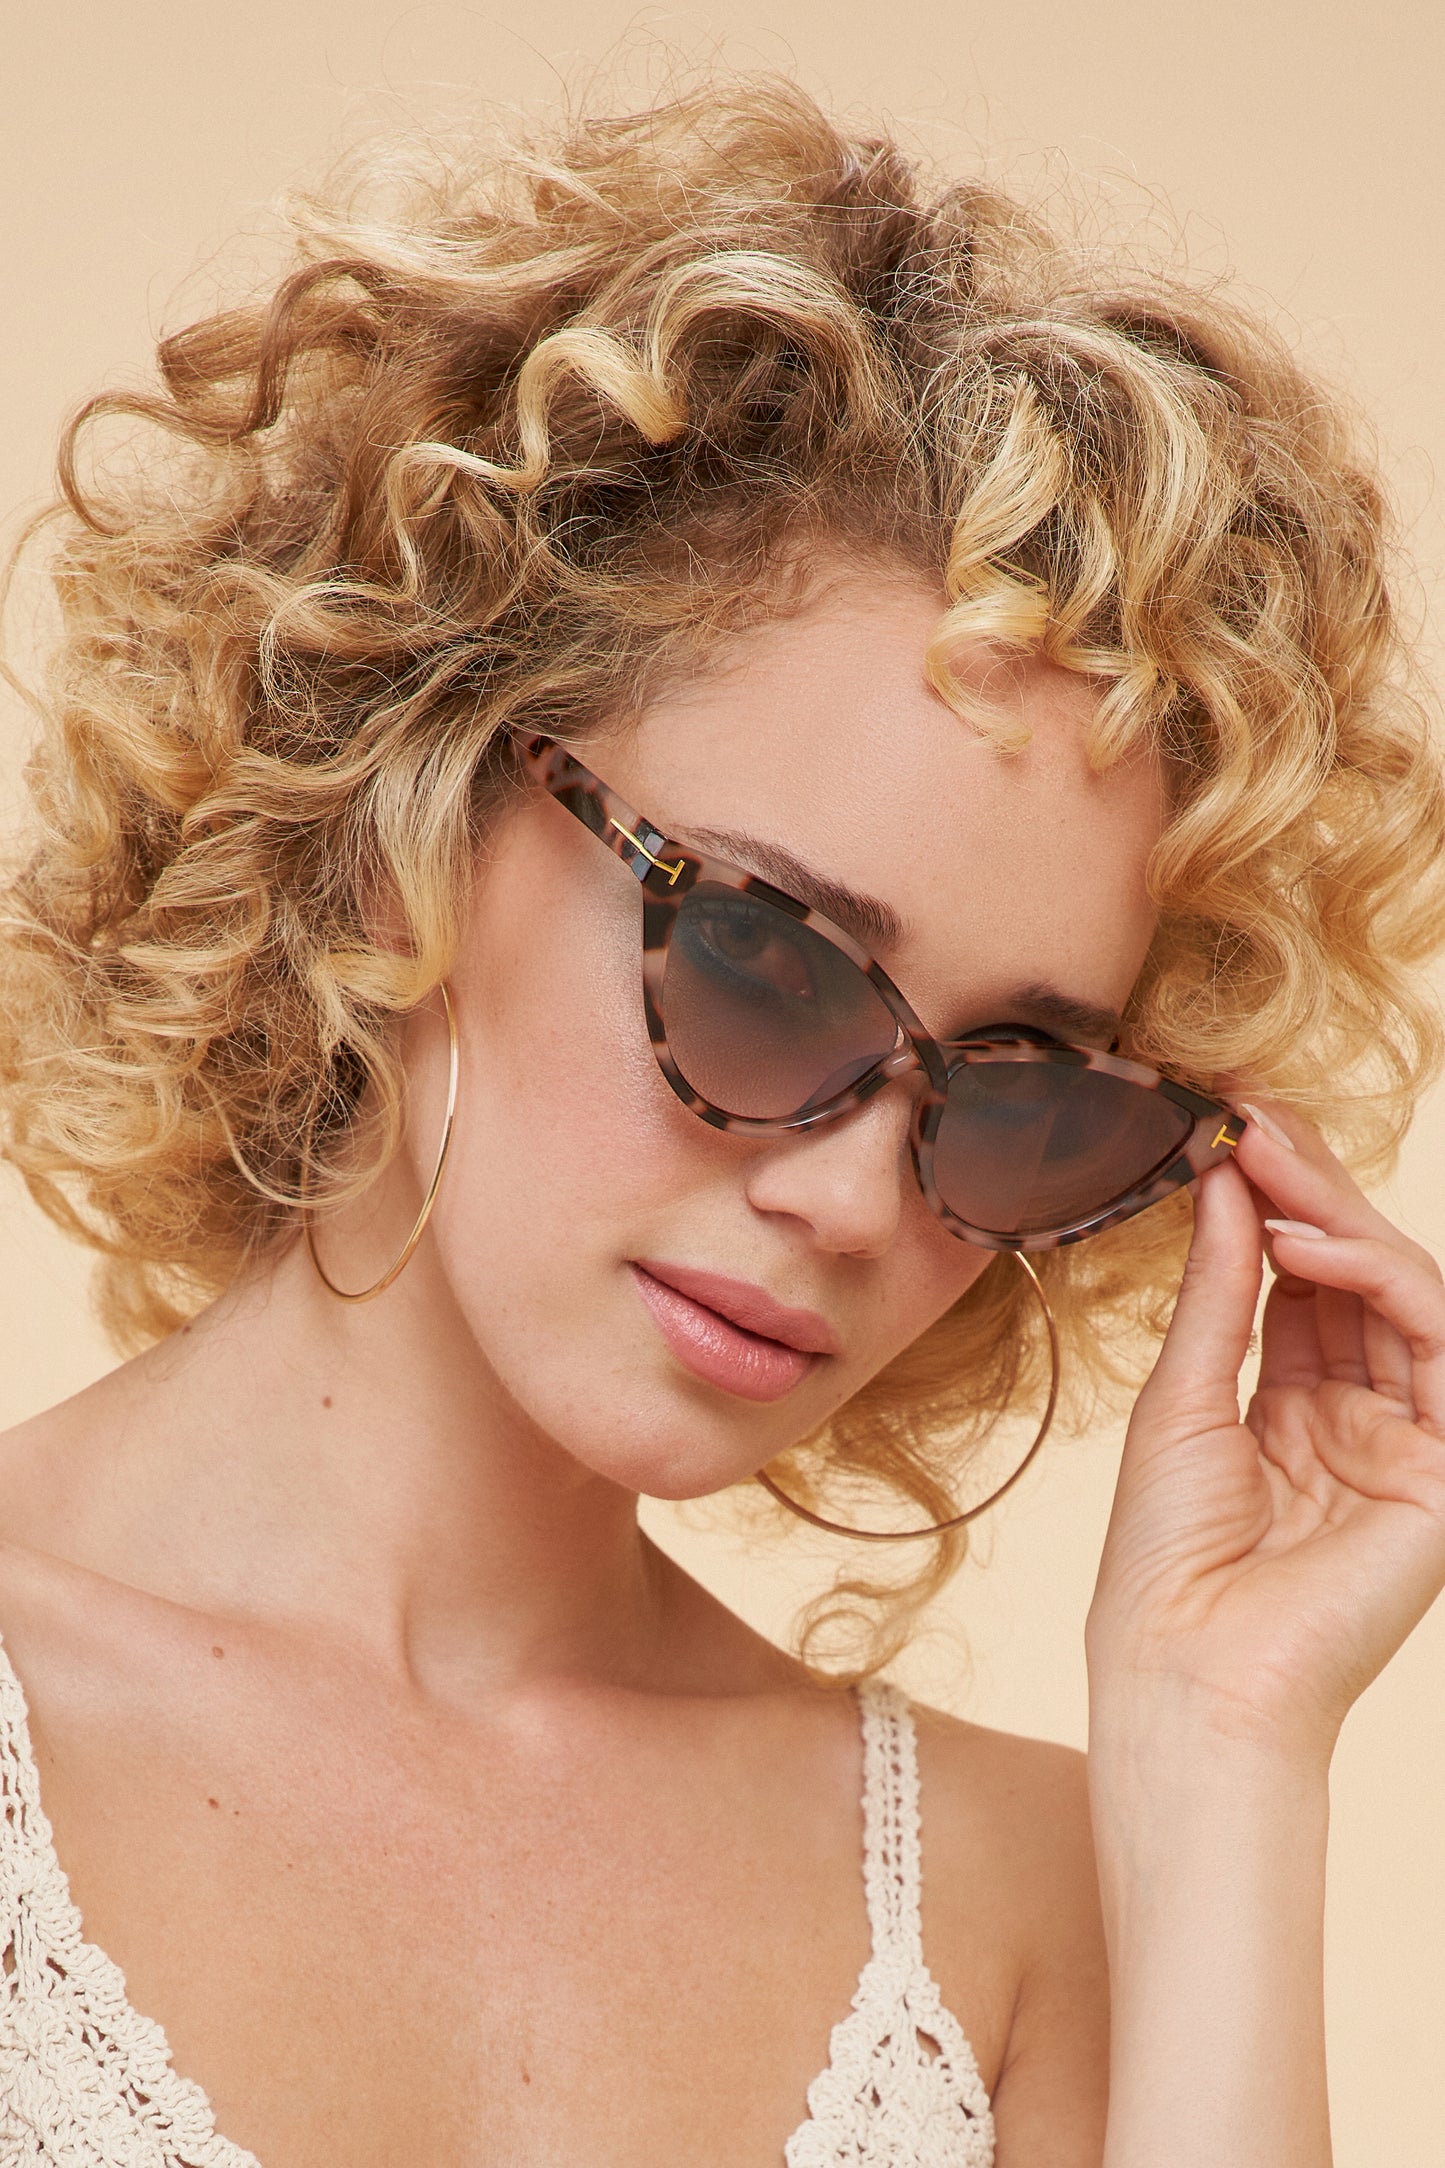 Powder Design Ltd - Accessories Sunglasses Tortoiseshell (2183)